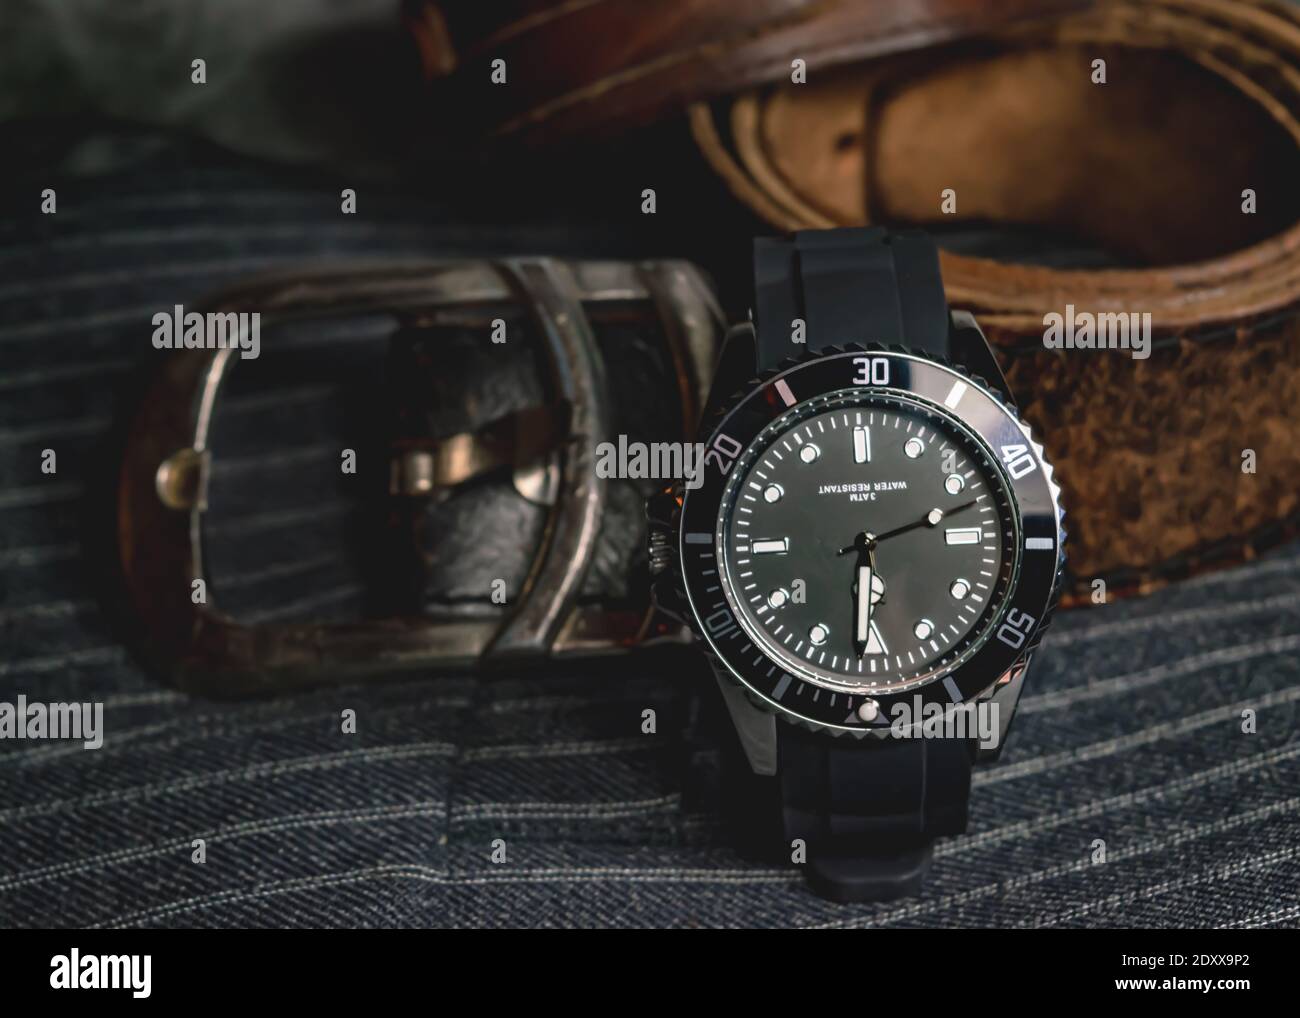 Gros plan d'une montre en chrome noir, d'une boucle de ceinture en cuir et d'une partie d'un bracelet en cuir sur un tissu gris Banque D'Images